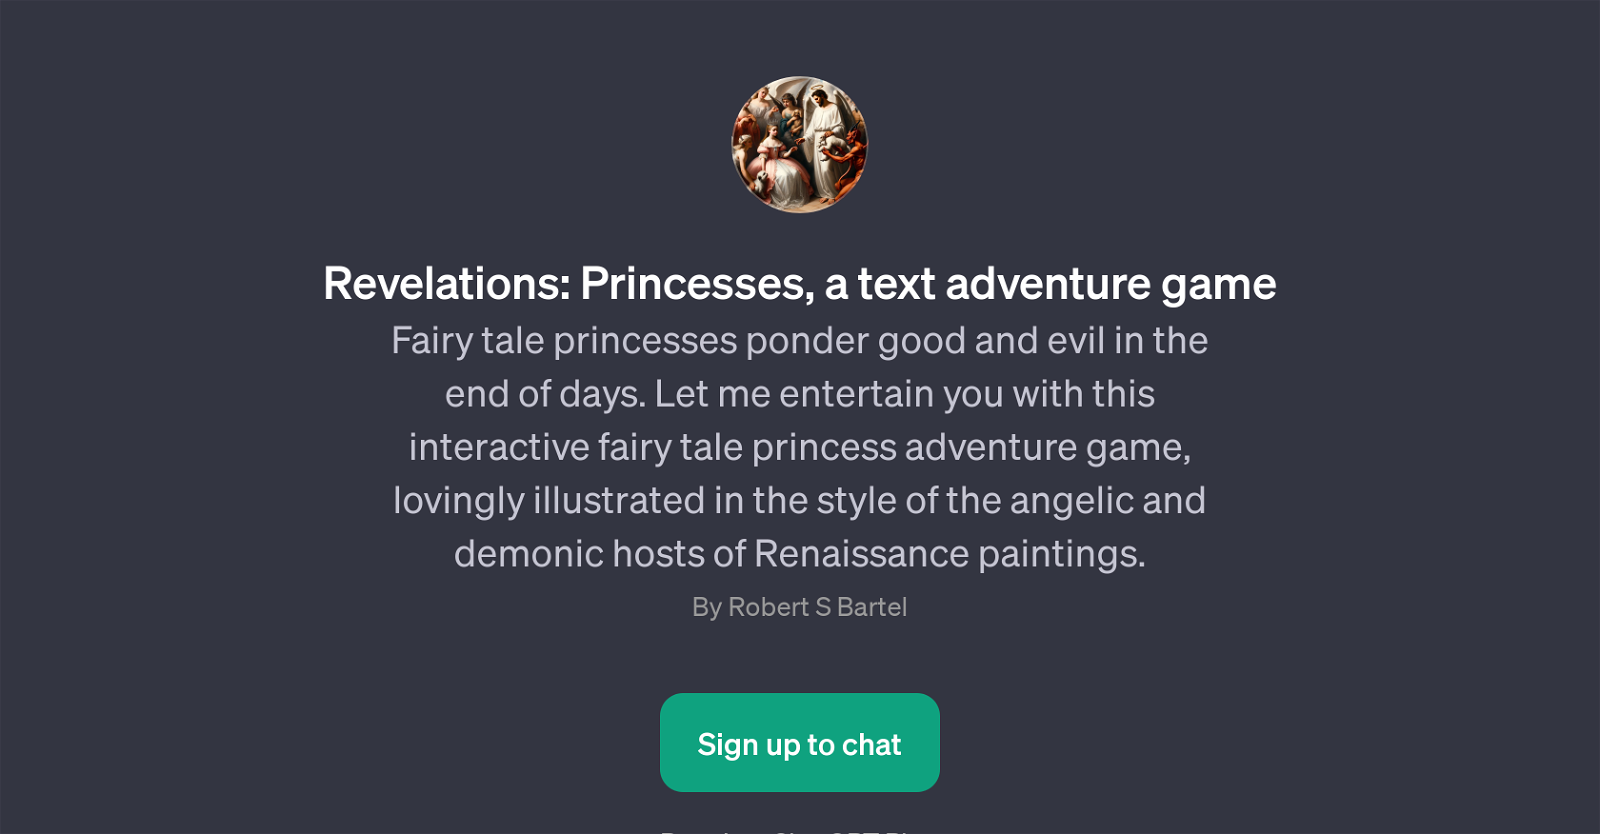 Revelations: Princesses website